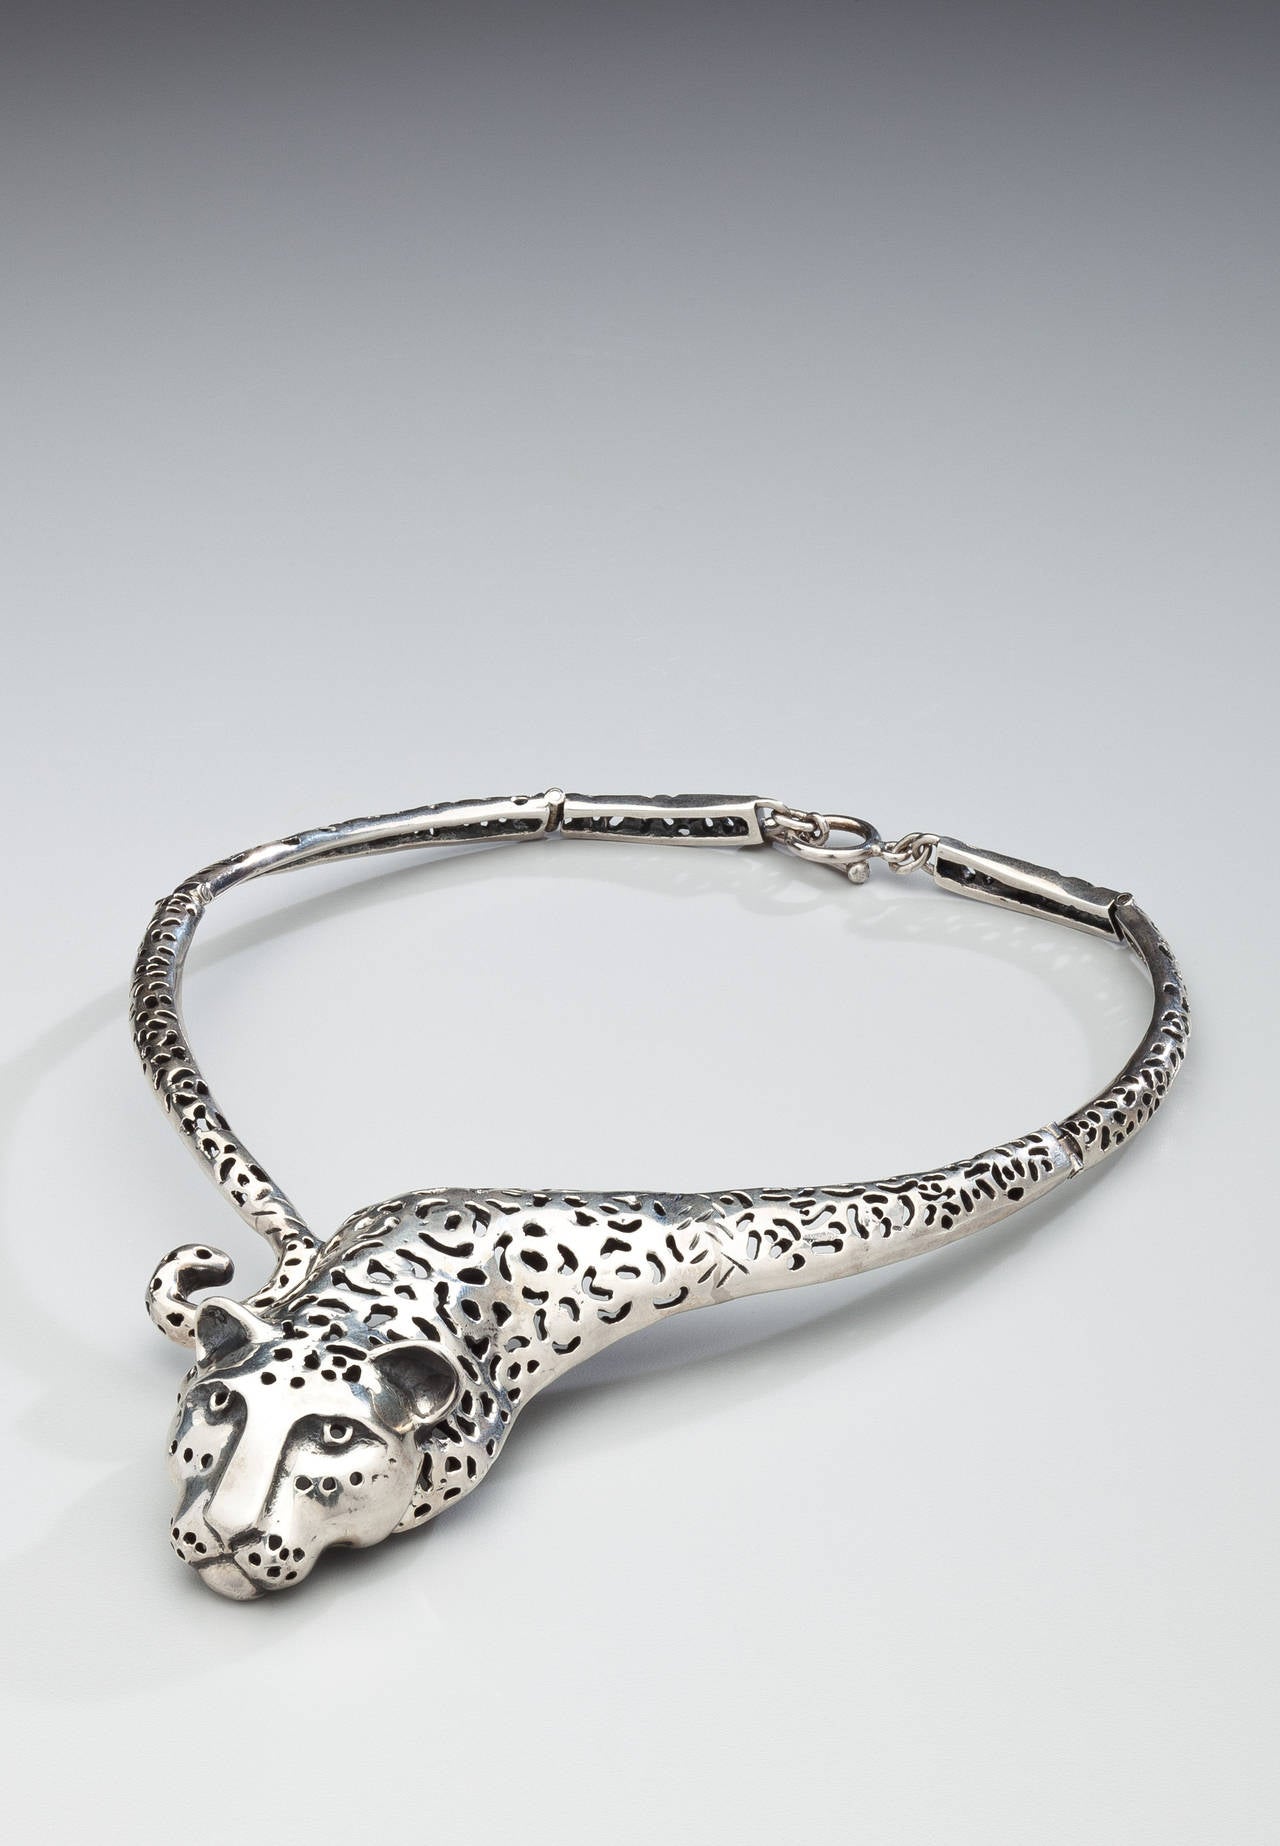 Artist Emilia Castillo Jaguar Necklace For Sale